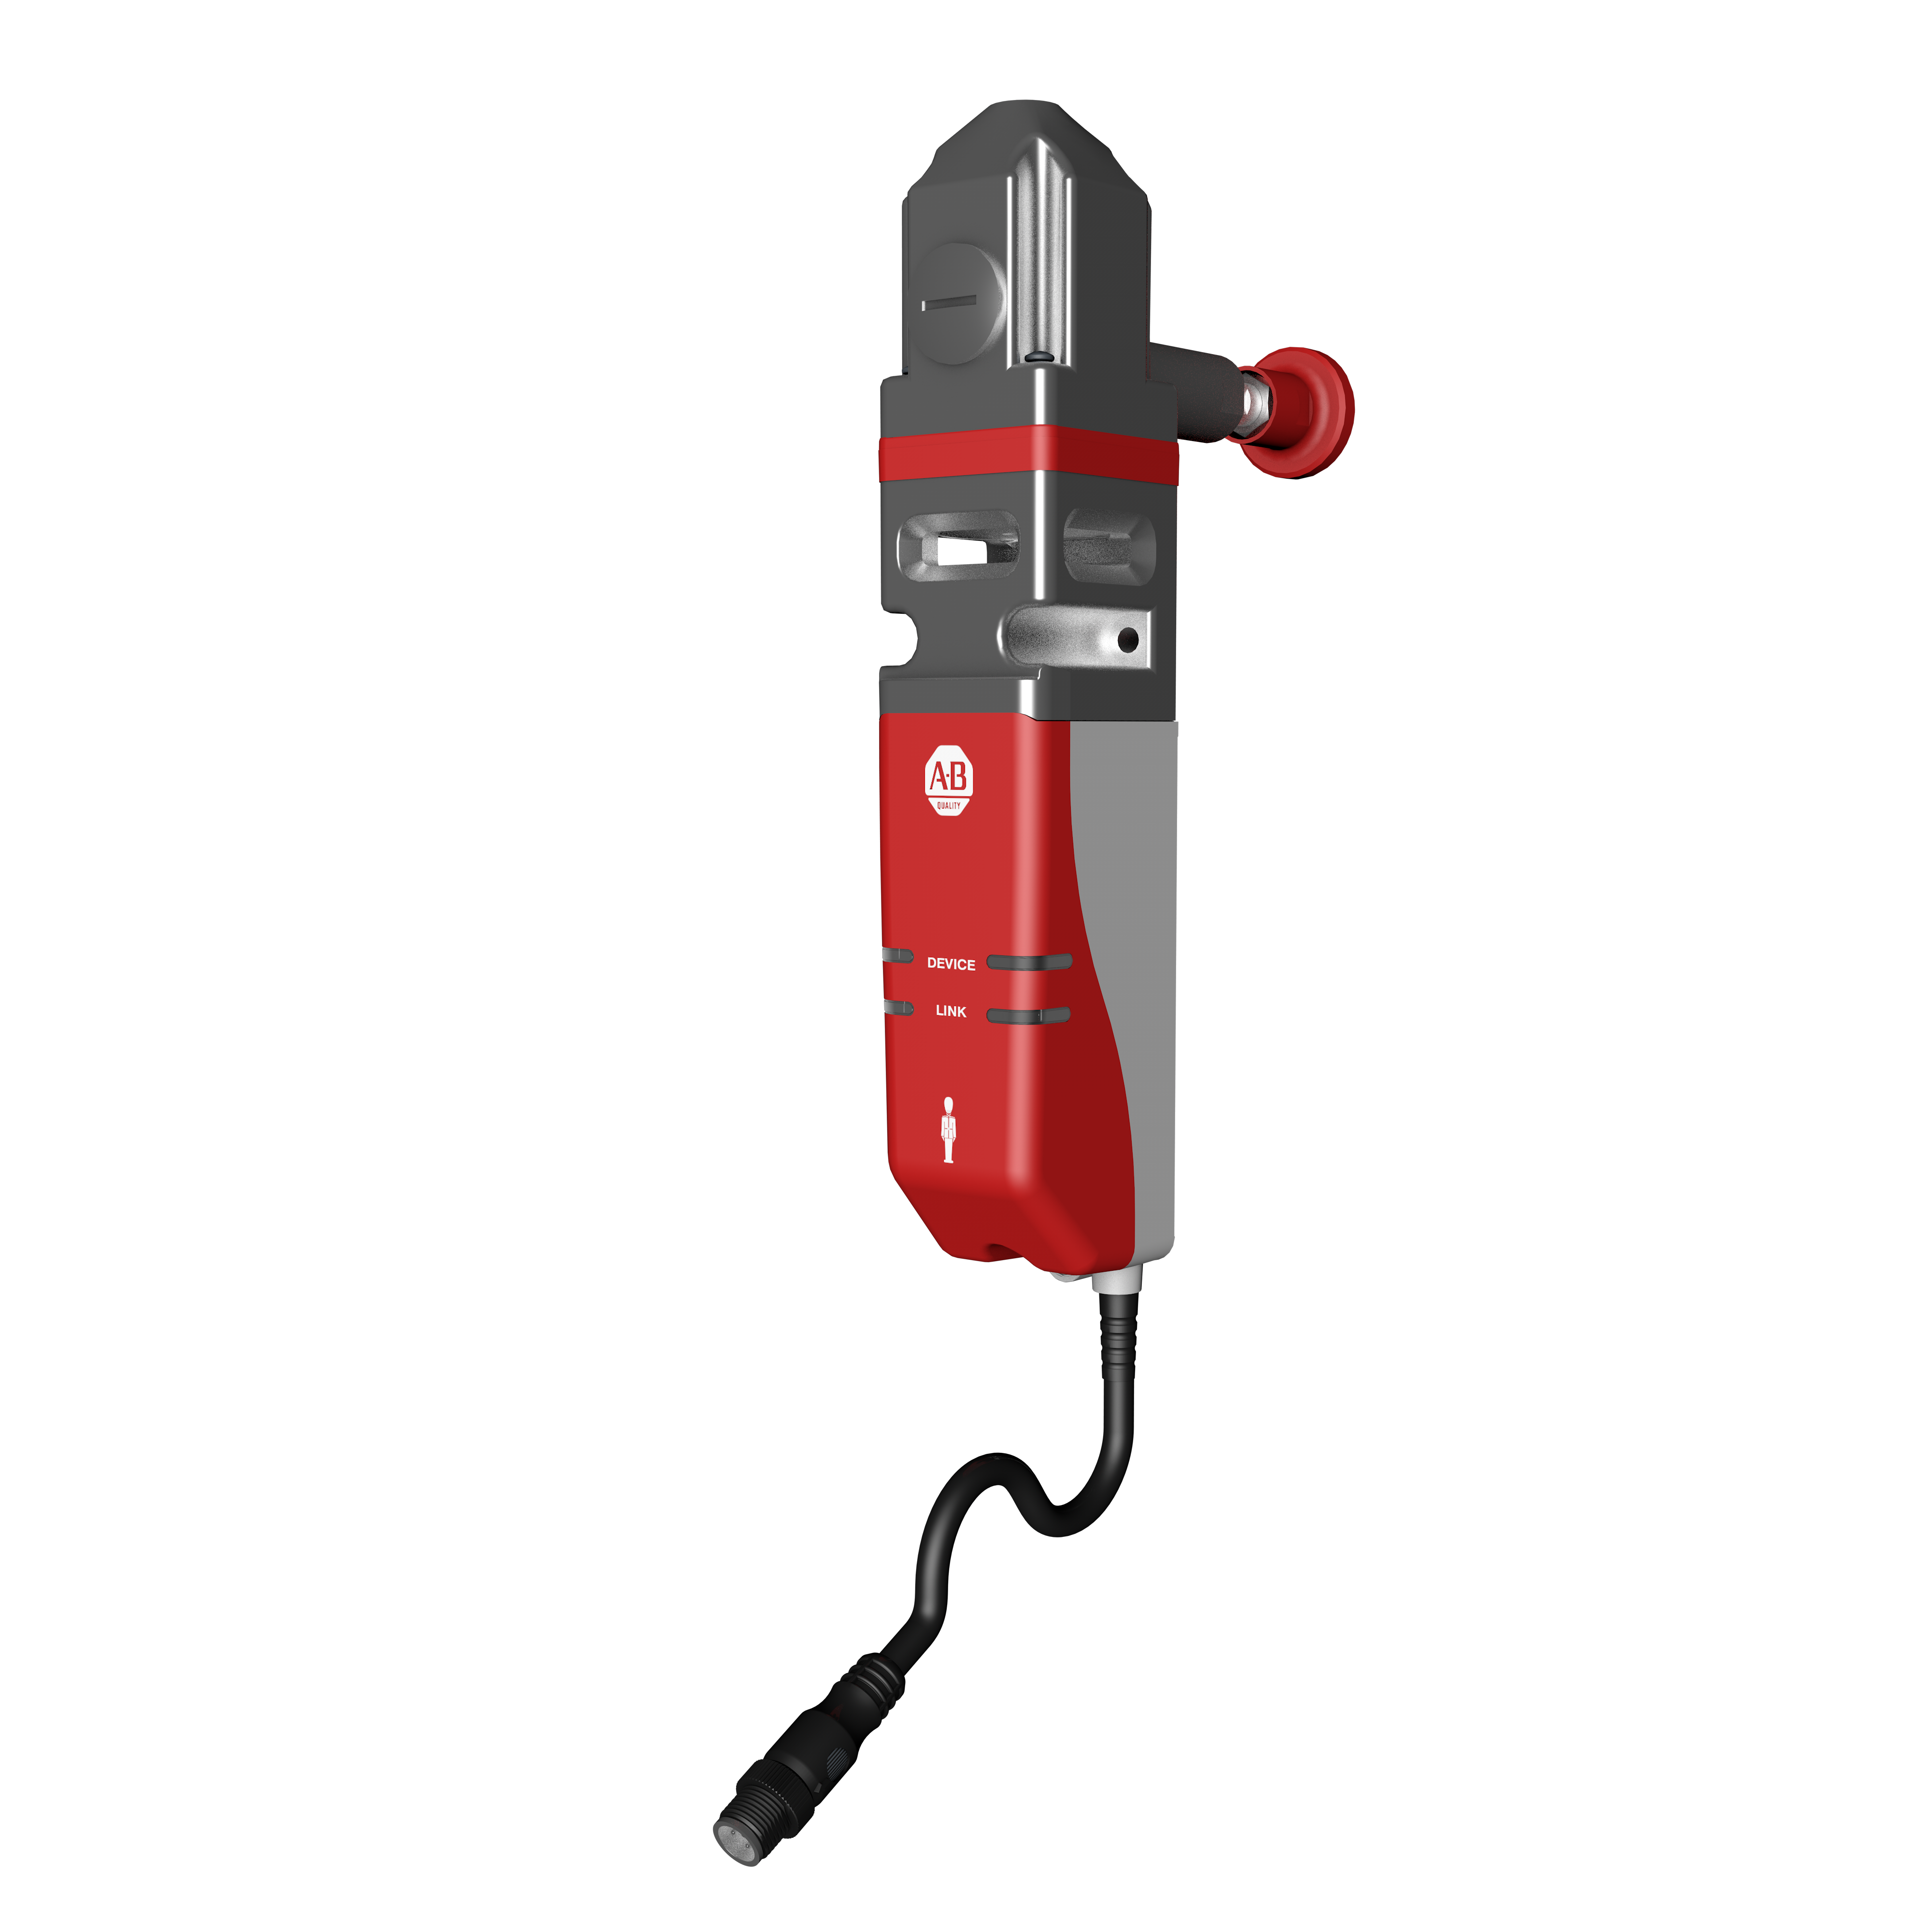 440G-MZ Sicherheitszuhaltung mit rot-grauem Sicherheitskunststoffgehäuse unter einem Aluminiumwürfel mit einem Fluchtentriegelungs-Griff von der Rückseite und einem Kabel, das aus der Unterseite kommt. Allen-Bradley-Branding und LED-Anzeigen befinden sich vorne am roten Gehäuse